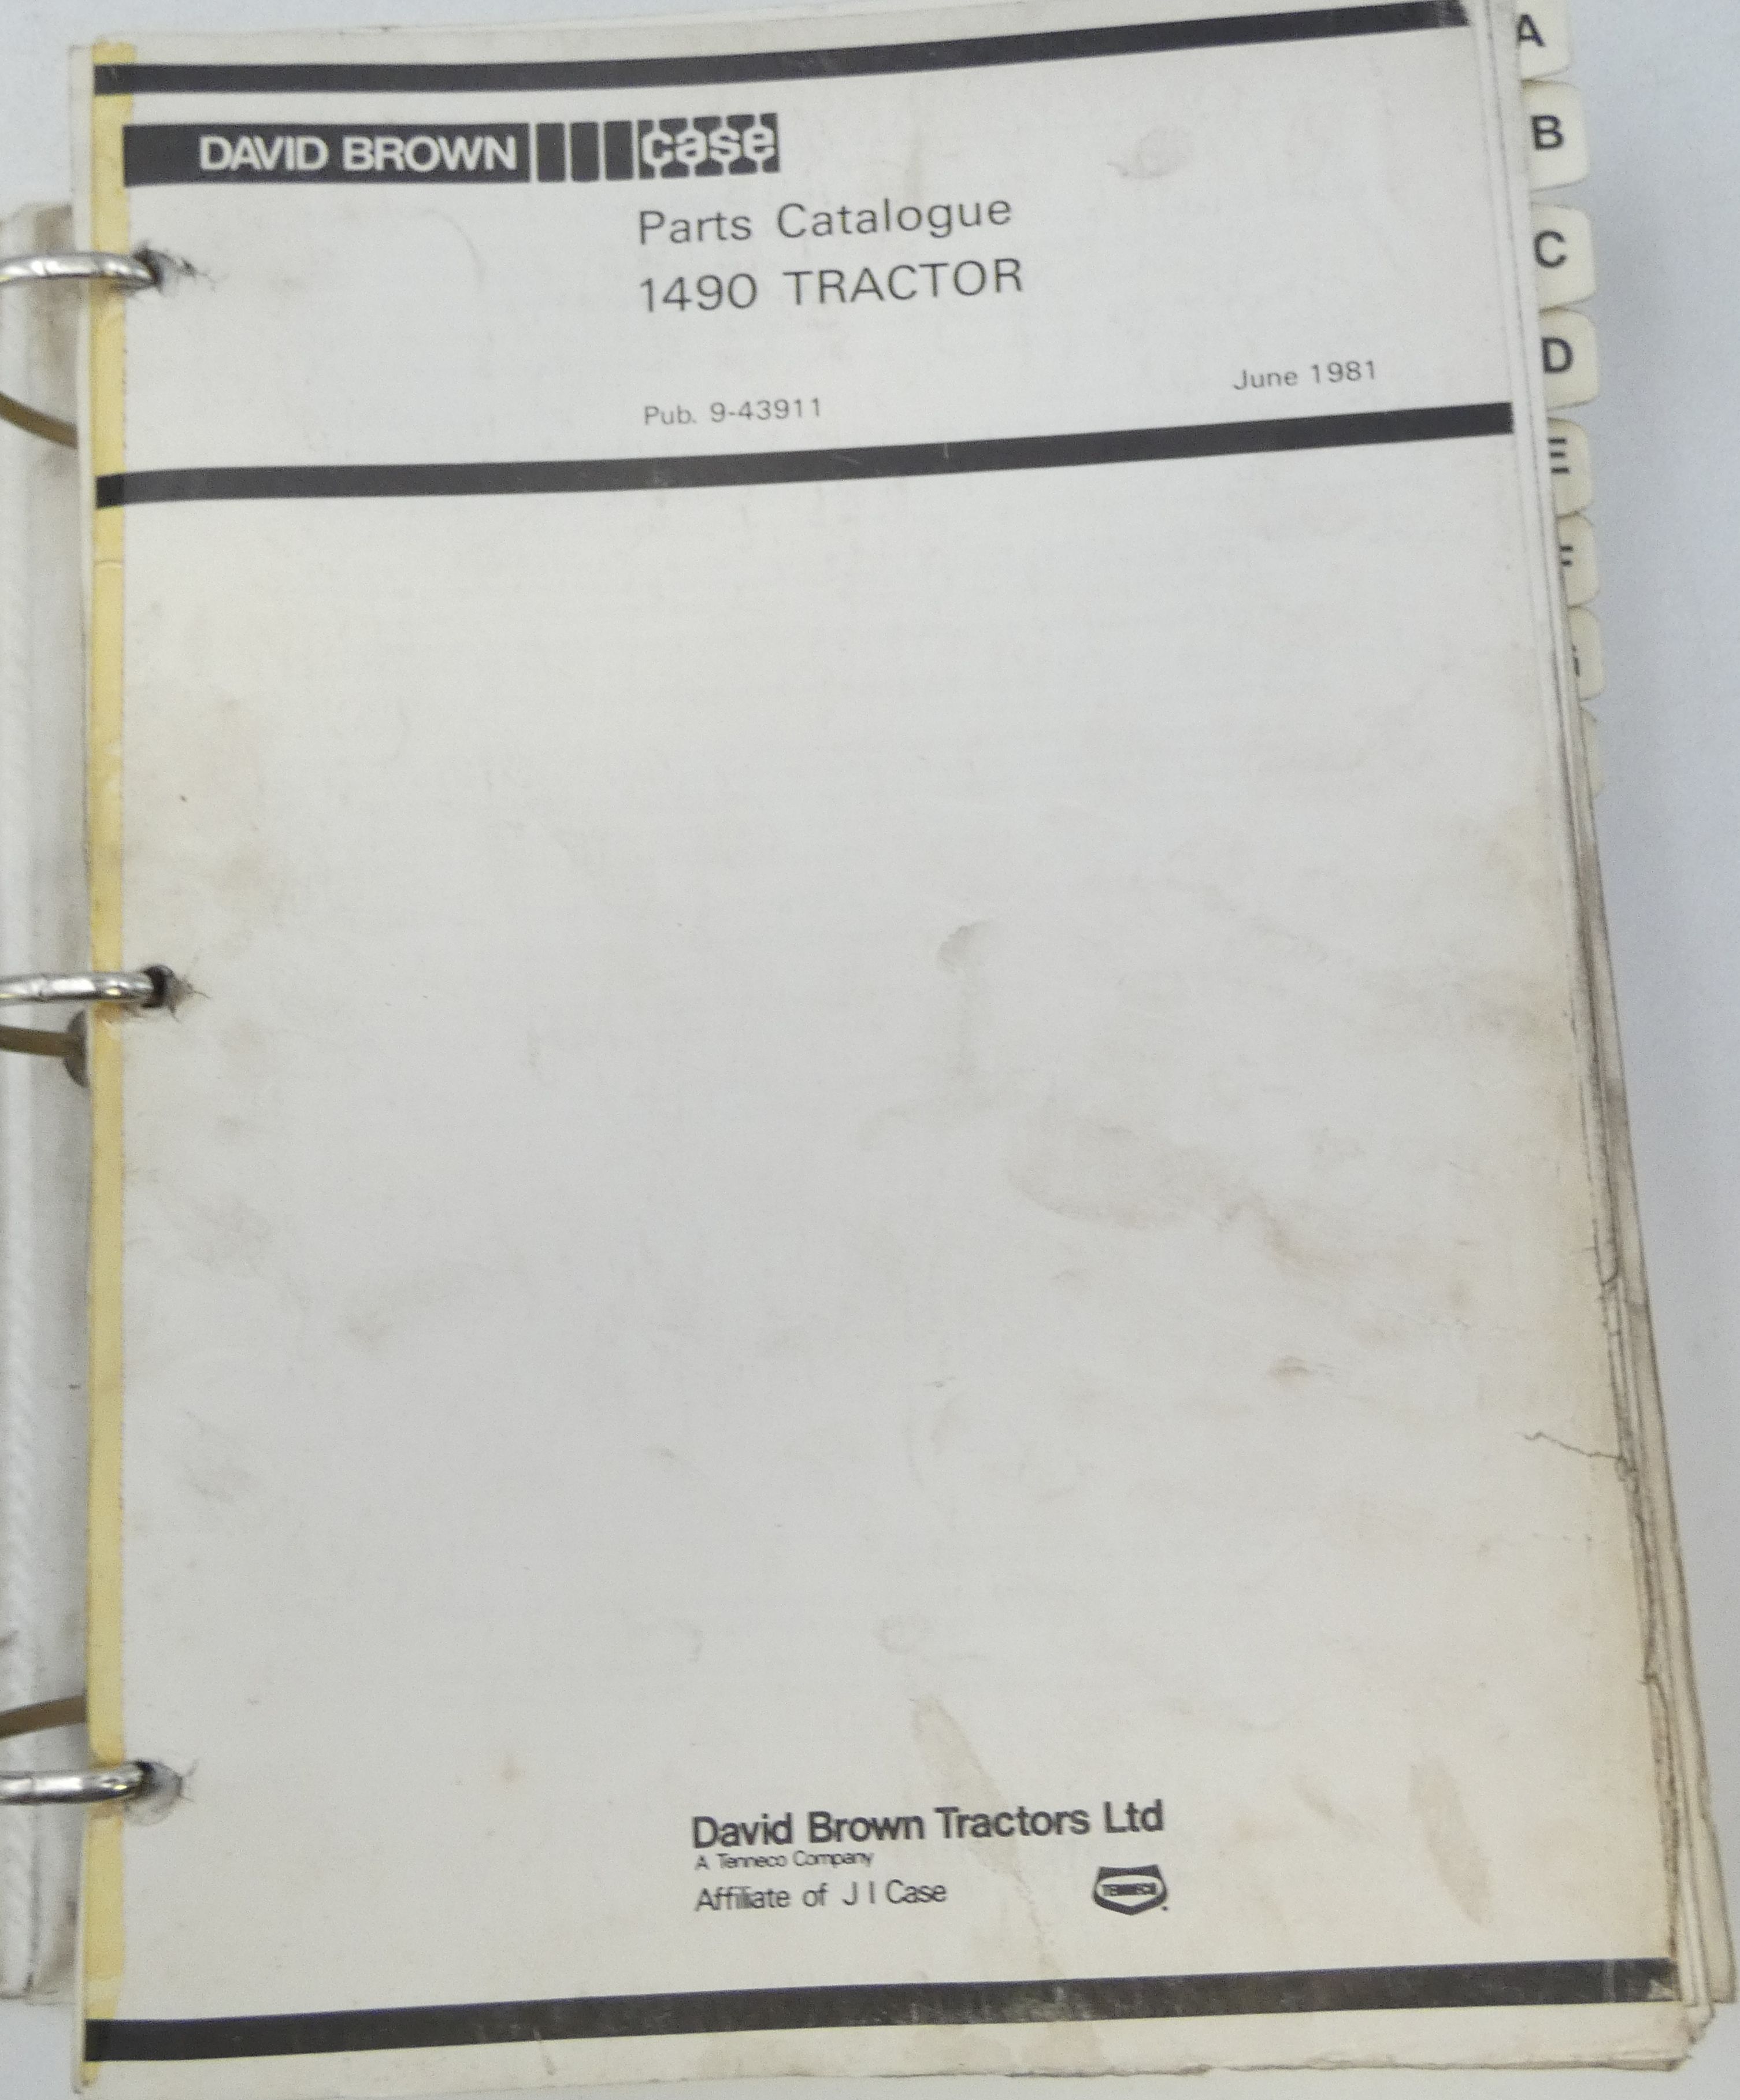 David Brown Case 1490 tractor parts catalogue